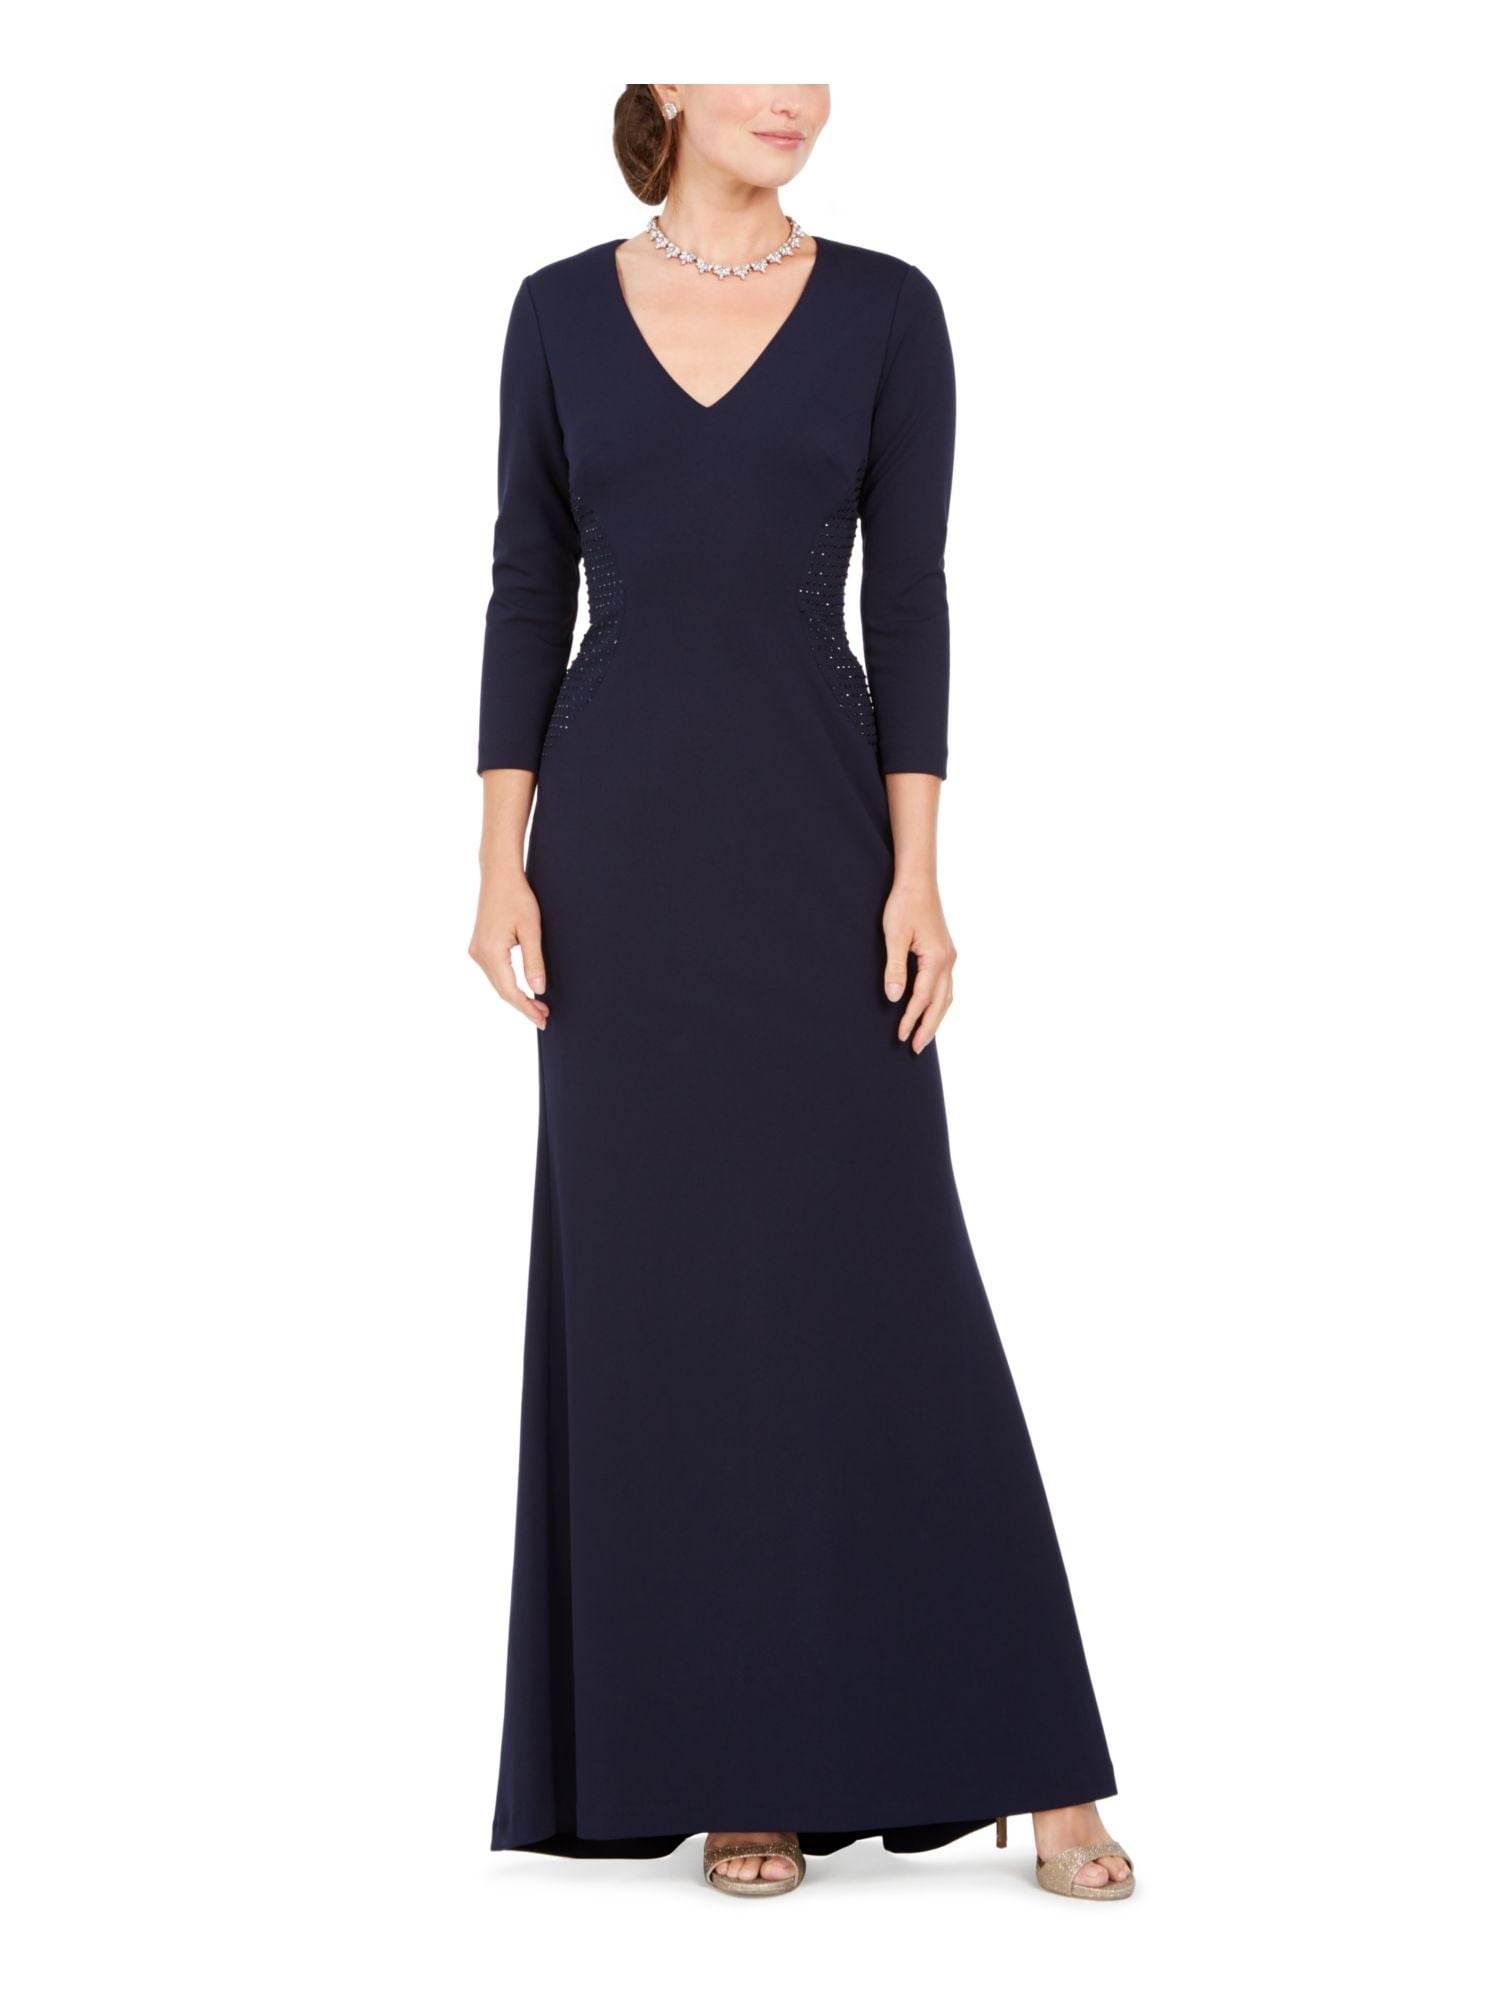 8 JESSICA HOWARD Womens Navy Long Sleeve Maxi Sheath Evening Dress Size 